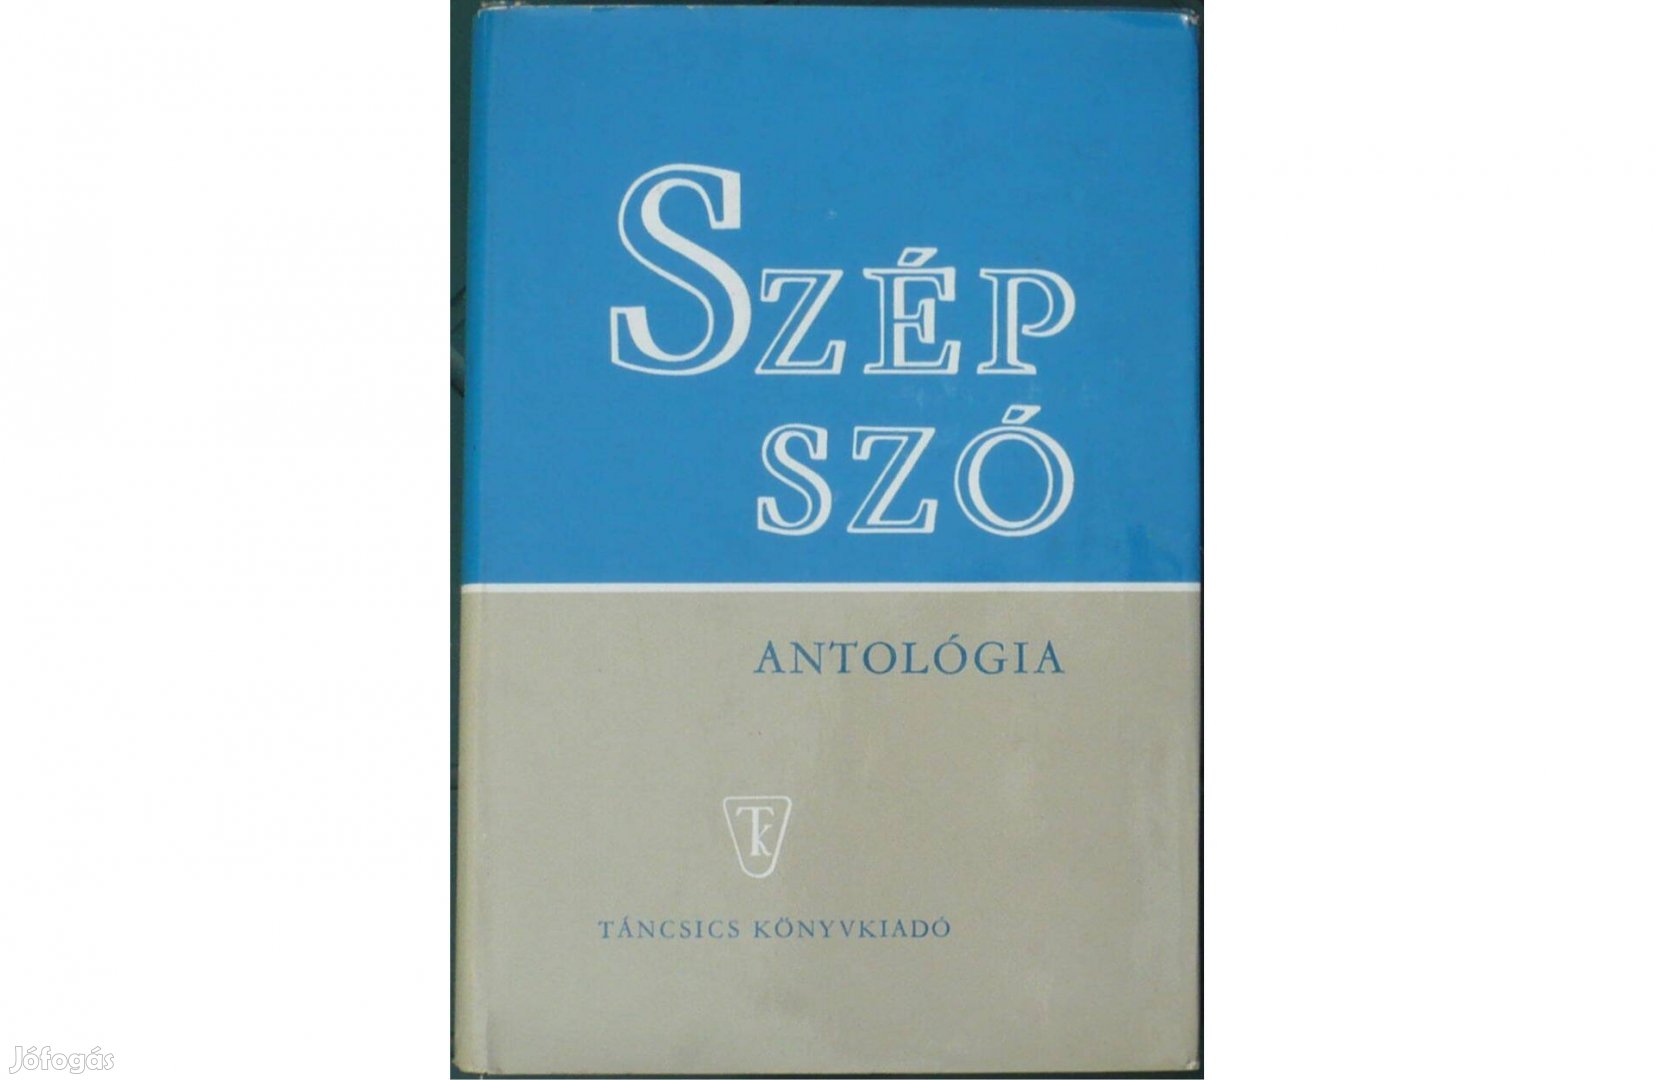 Szép szó - Antológia, 1971